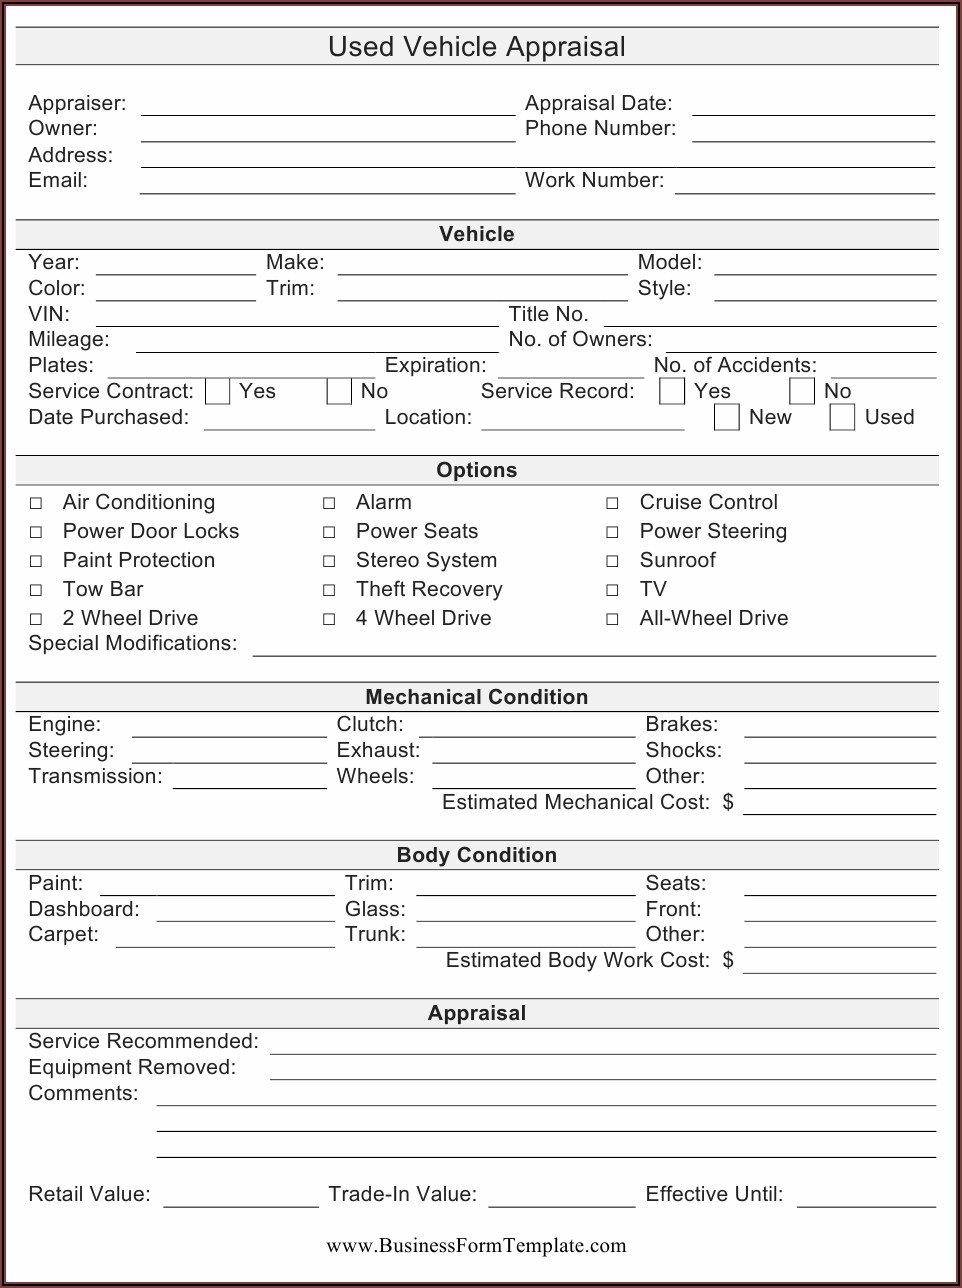 Texas Auto Appraisal Form